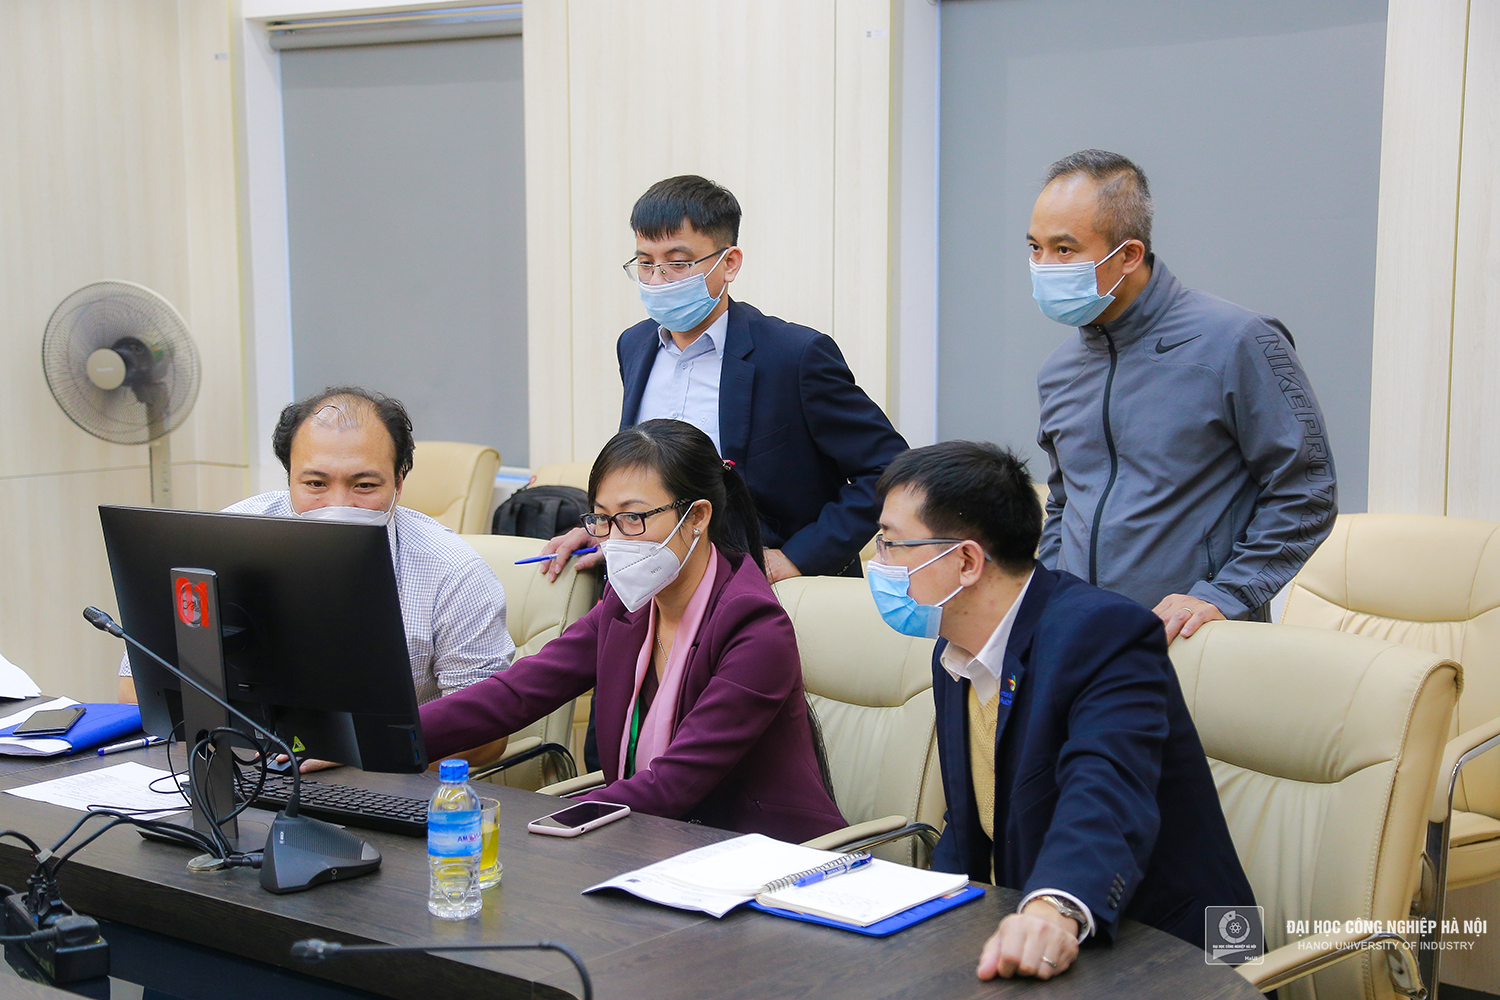 Khảo sát đánh giá chất lượng 04 chương trình đào tạo tại Đại học Công nghiệp Hà Nội